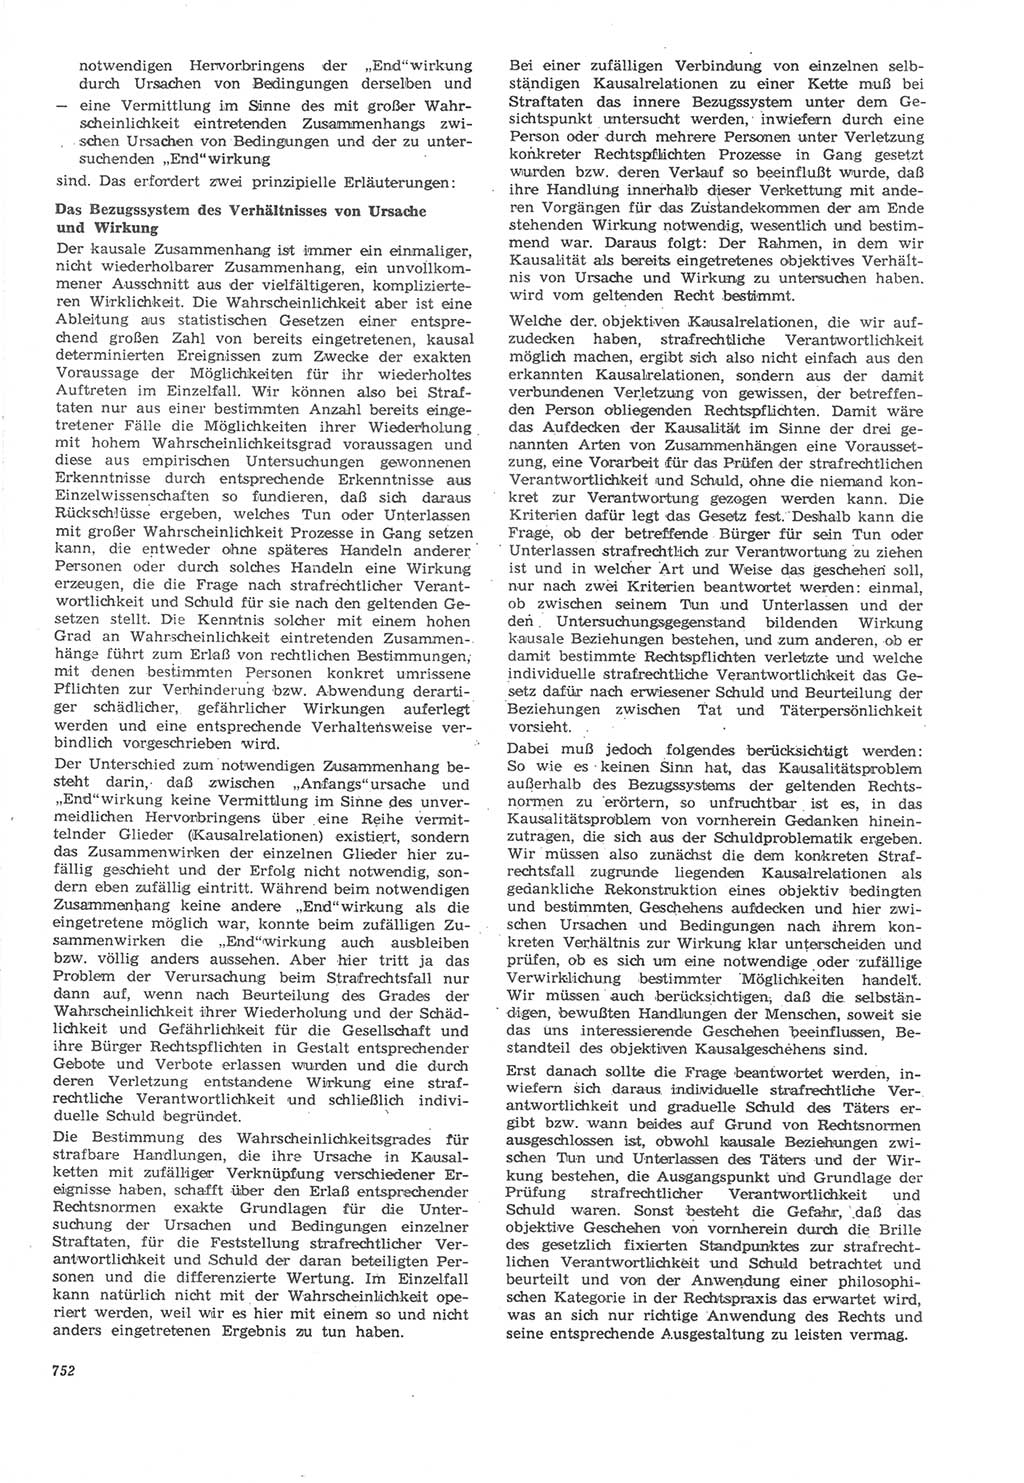 Neue Justiz (NJ), Zeitschrift für Recht und Rechtswissenschaft [Deutsche Demokratische Republik (DDR)], 22. Jahrgang 1968, Seite 752 (NJ DDR 1968, S. 752)